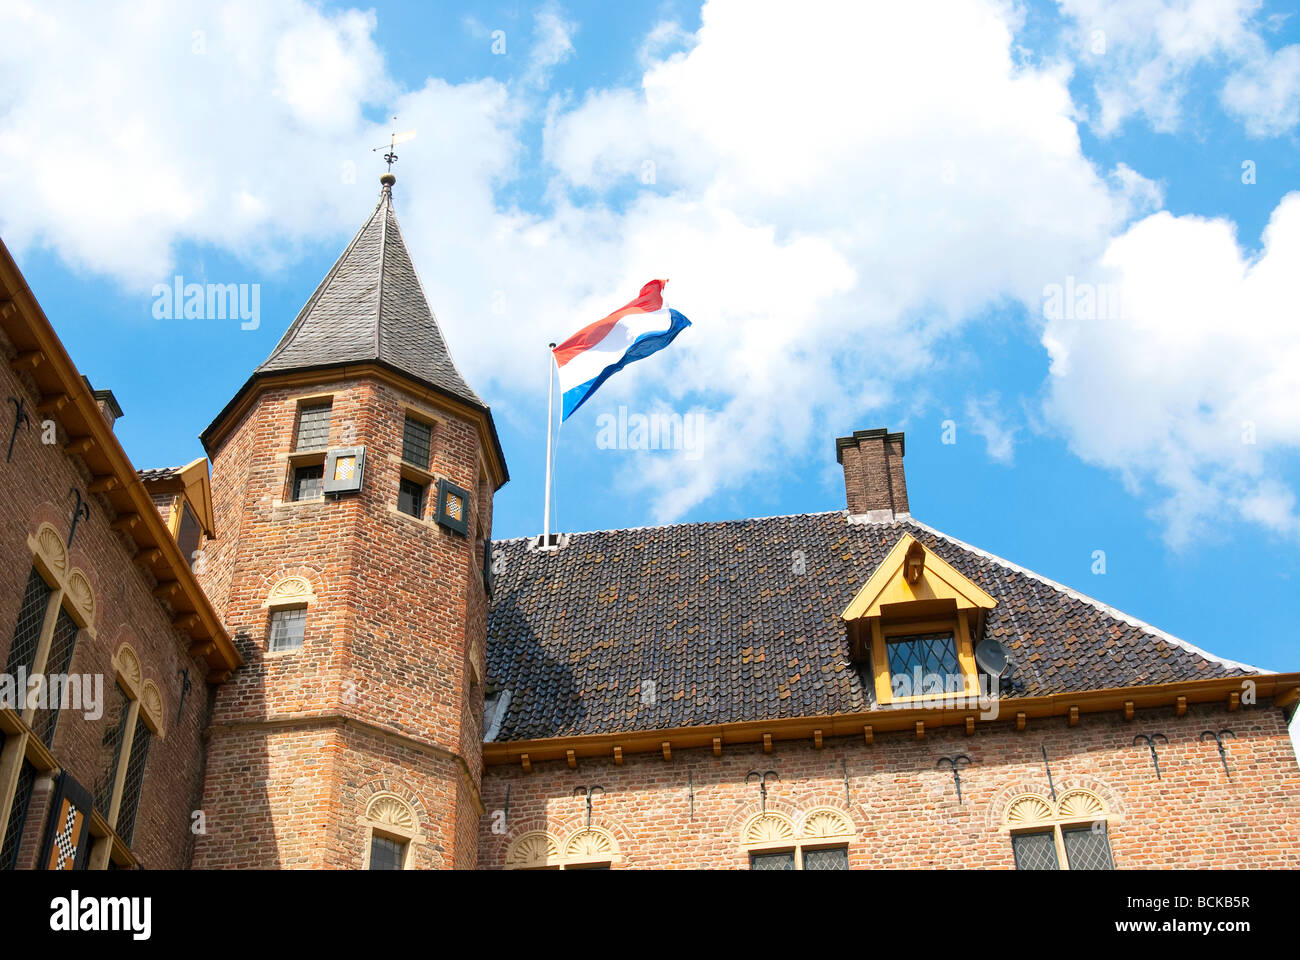 Castle of Vorden in the Achterhoek in the Netherlands Stock Photo